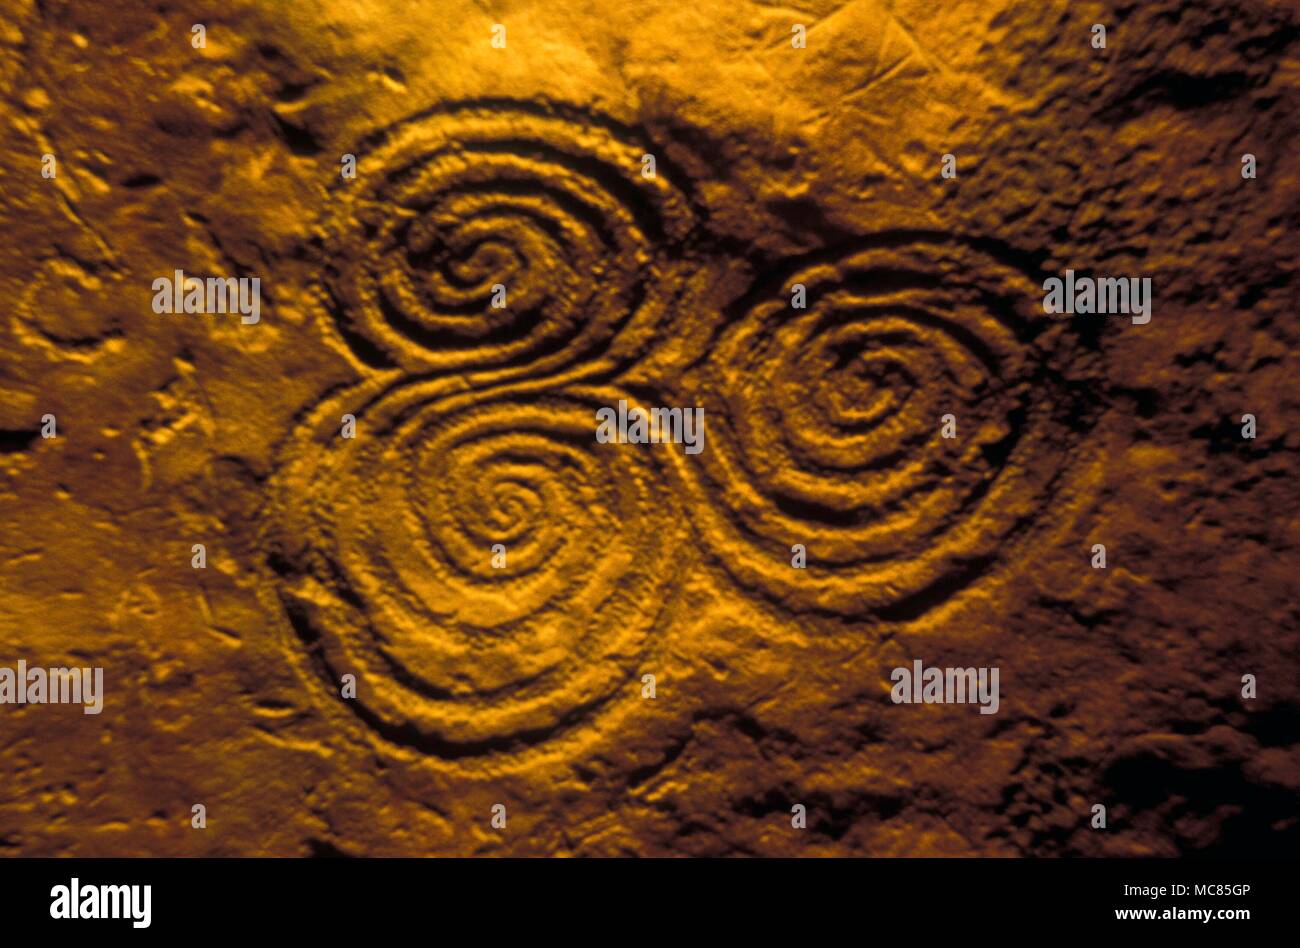 Spirali - Celtic. Tripla spirale formazioni in camera finale del passaggio di epoca preistorica in Newgrange, Irlanda. La sua presenza, così vicino alla spazio culminante dell annuale effetto di luce, suggerisce che questa spirale è collegato con il solare energie. Foto Stock